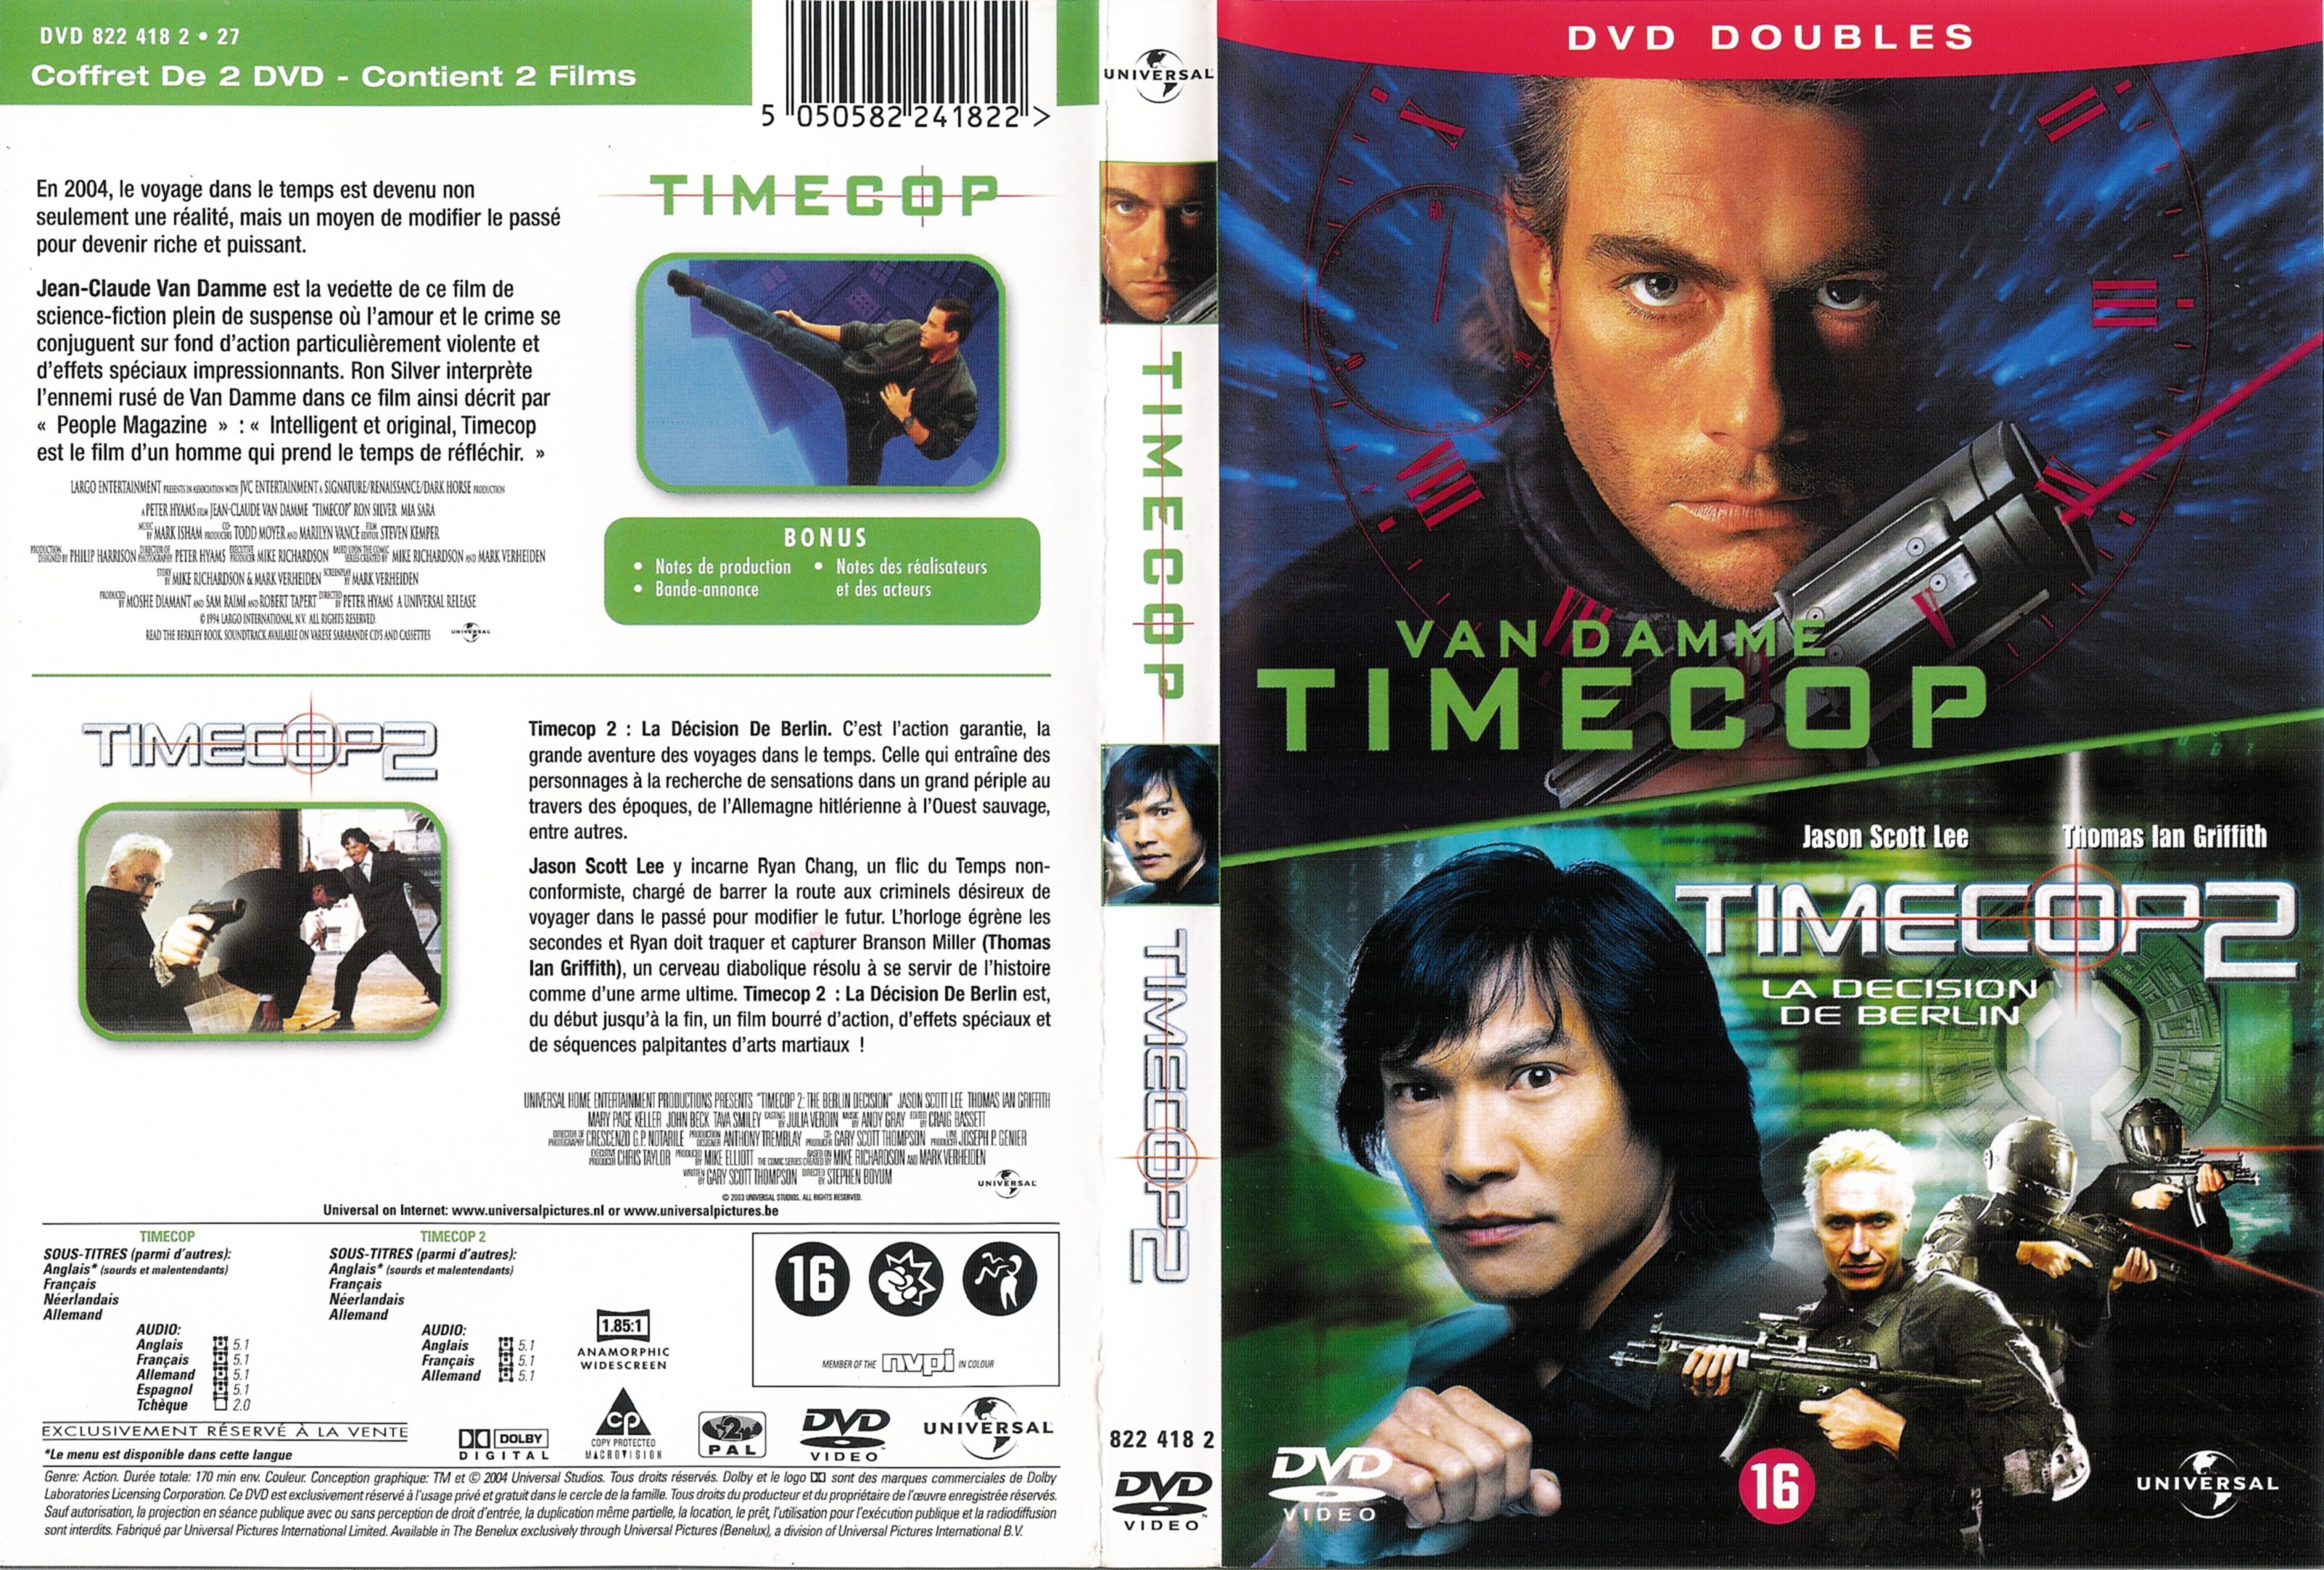 Jaquette DVD Timecop 1 et 2